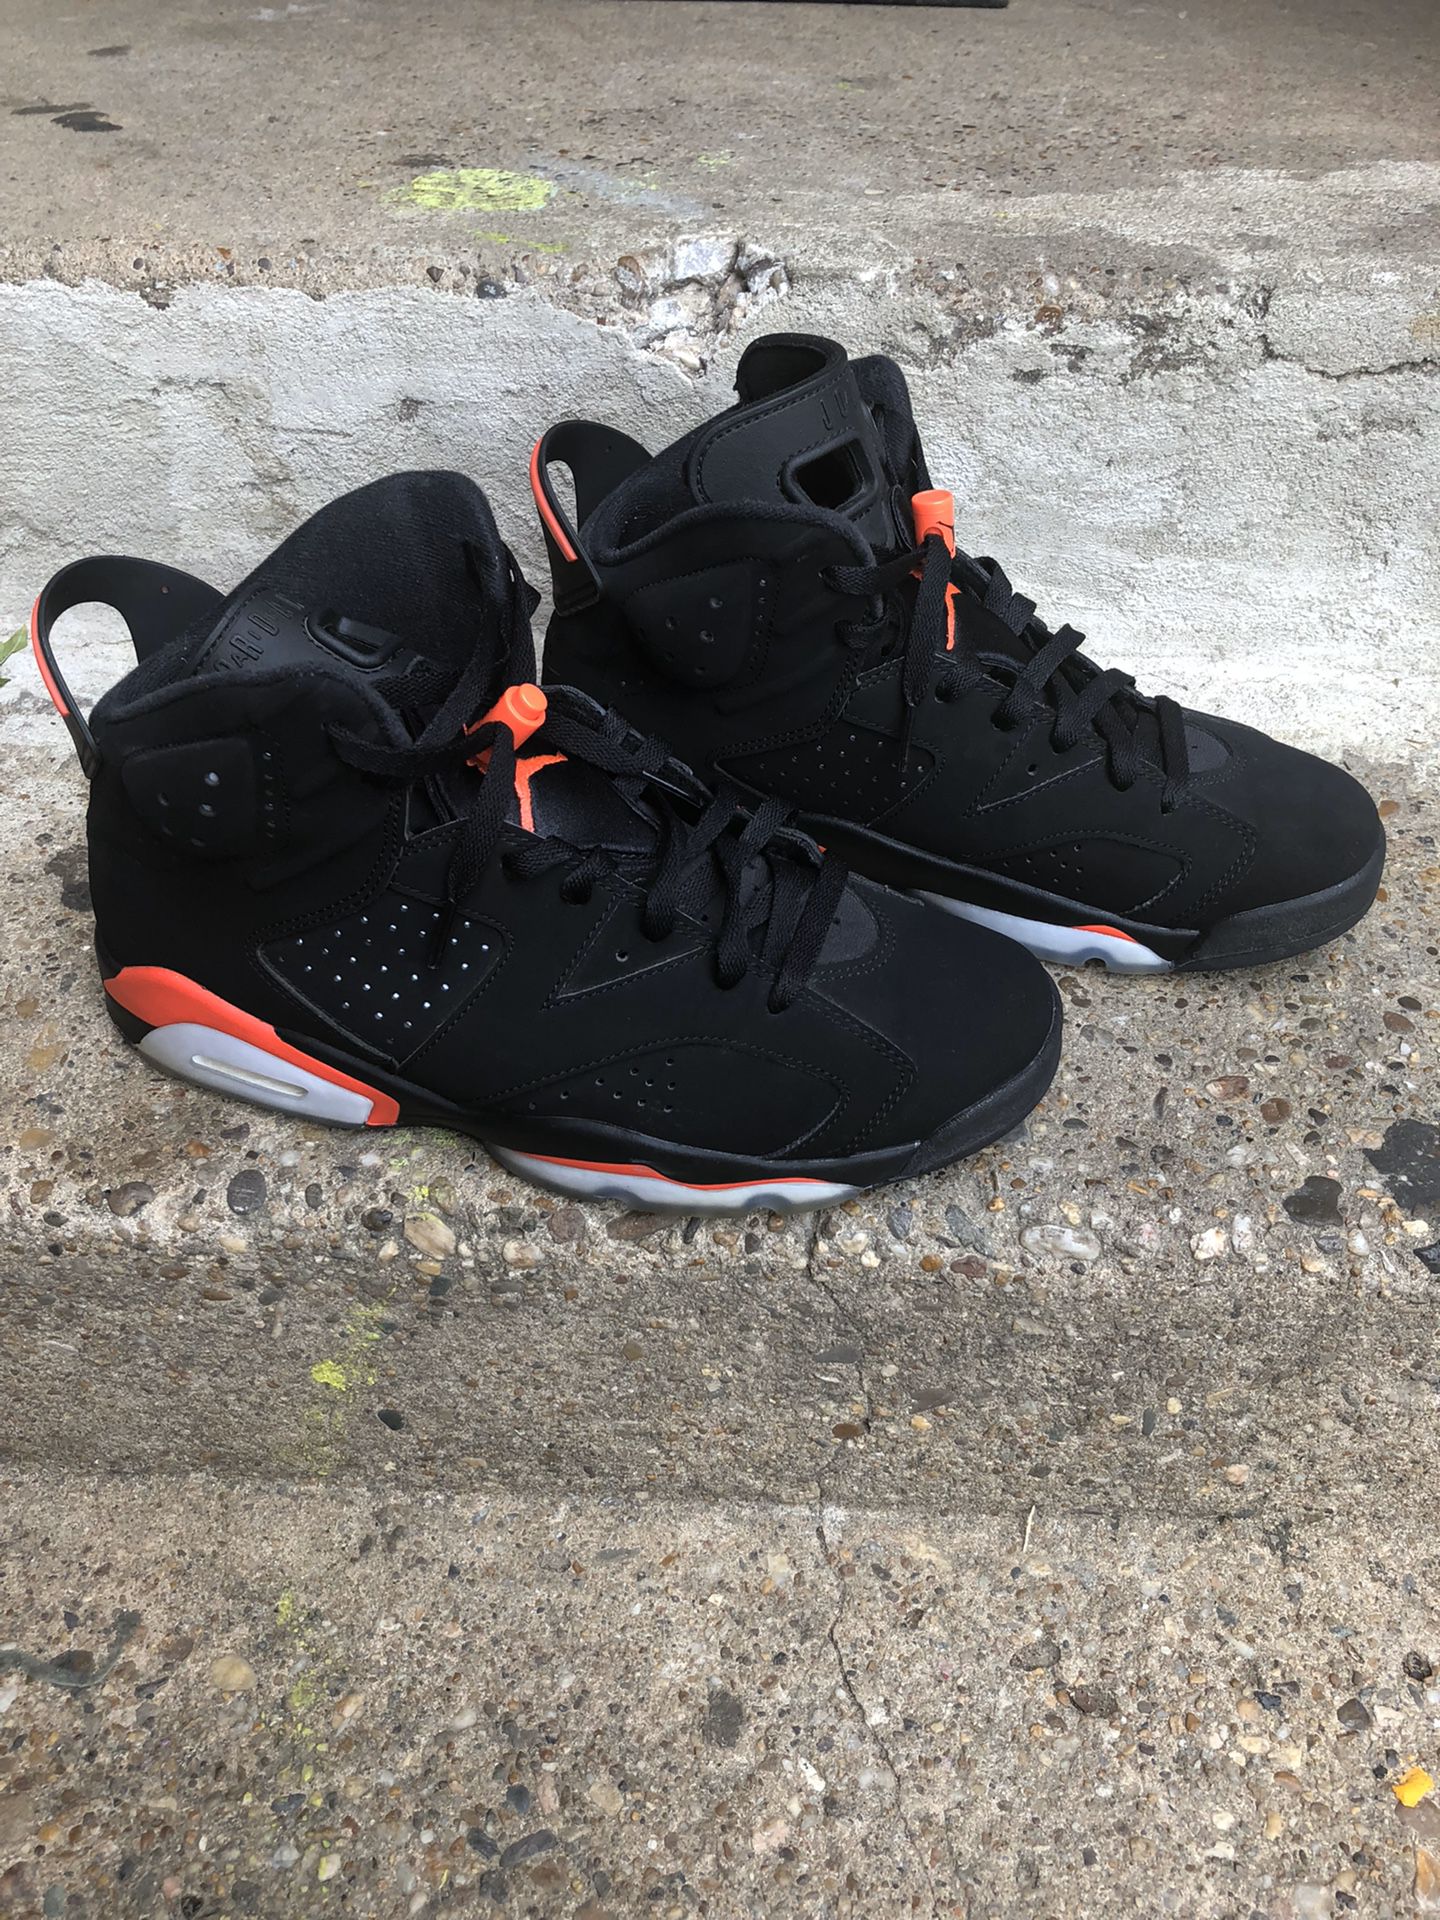 Jordan retro 6s “black infrared” size 9.5 2019 release